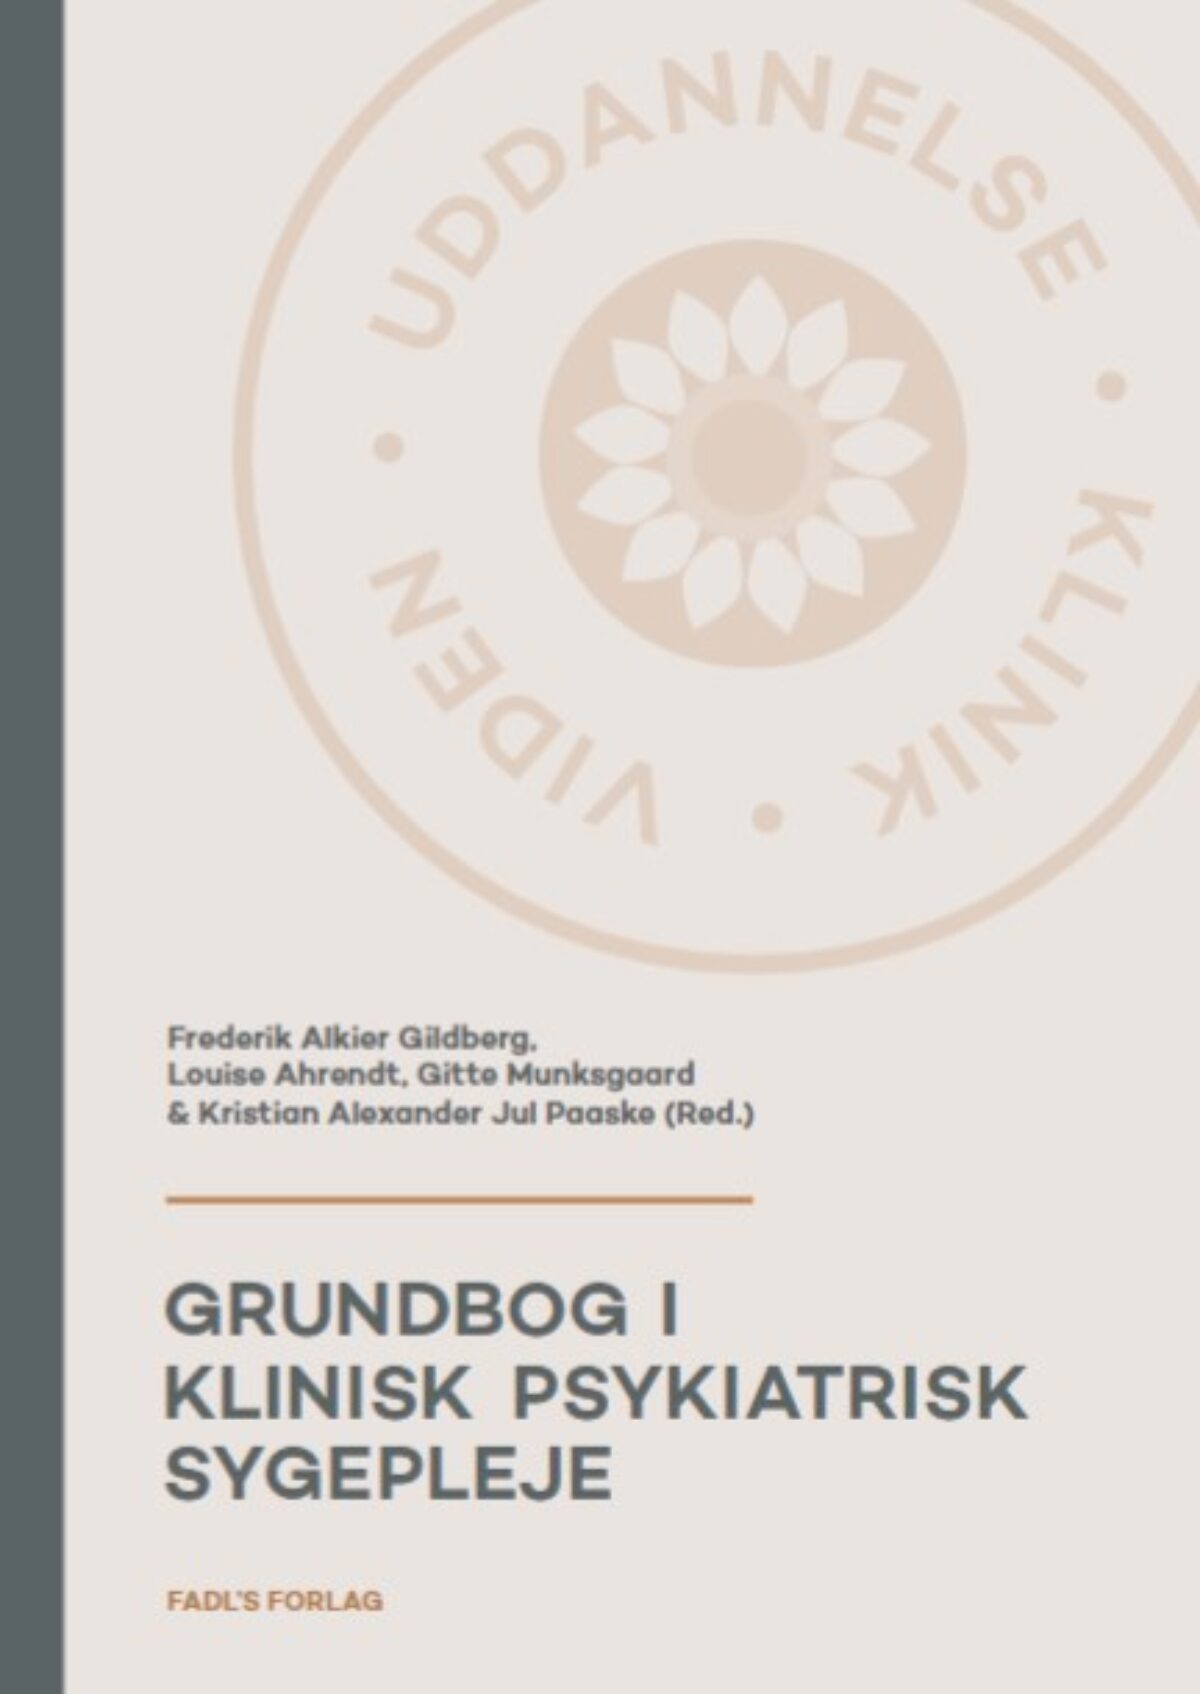 Grundbog i psykiatrisk 2. udgave - FADL's Forlag